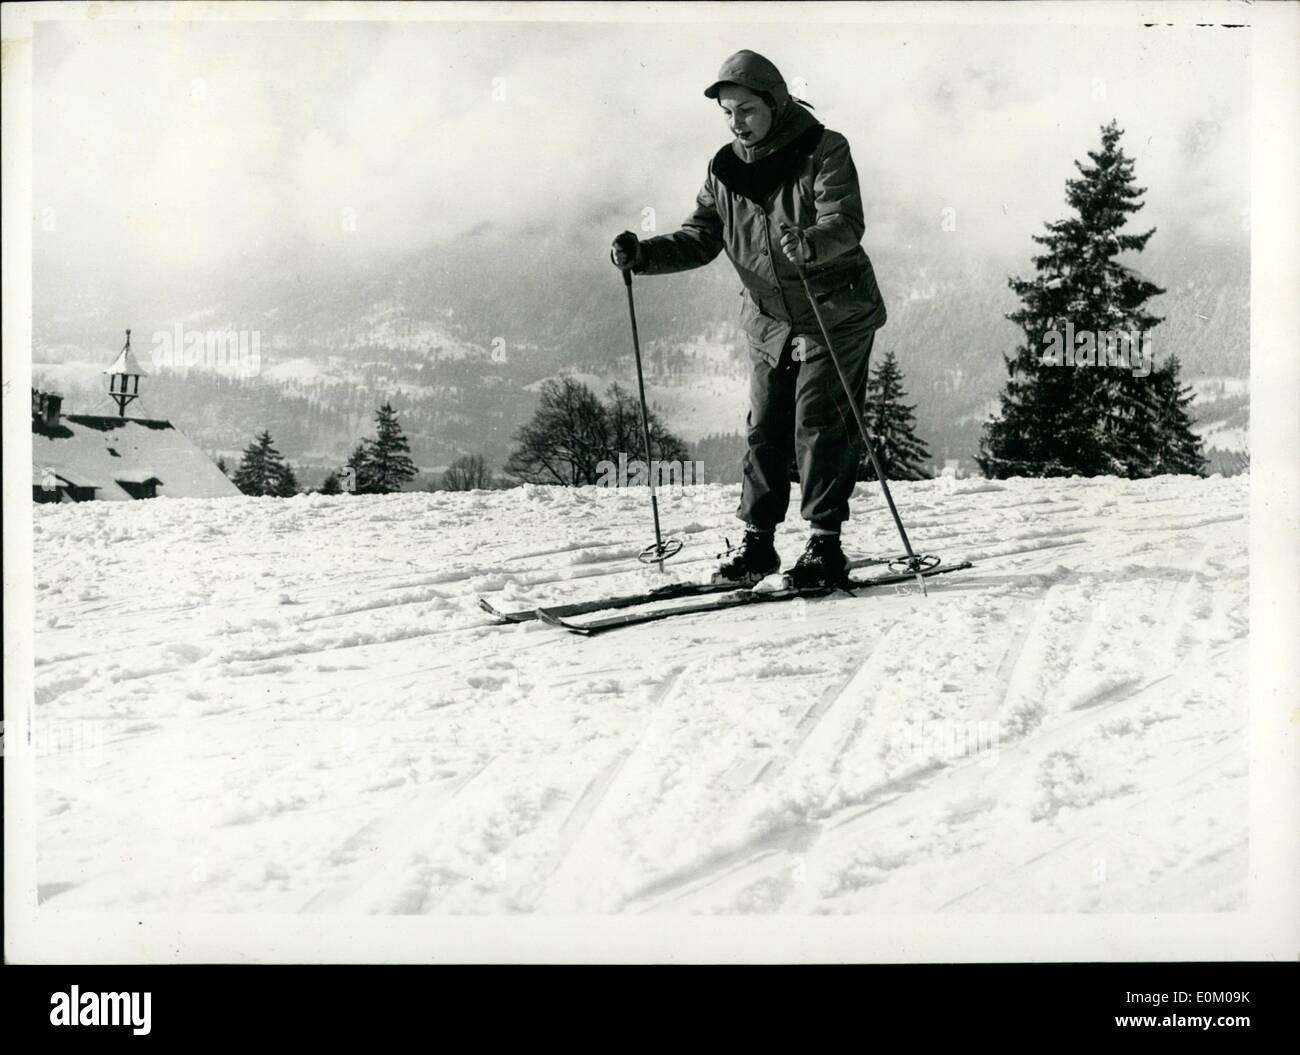 Gen 01, 1953 - S.H.A.P.E. Comandante in vacanza a Garmisch generale Ridgway va Ski-Ing: Generale Ridgway, il comandante supremo delle Foto Stock